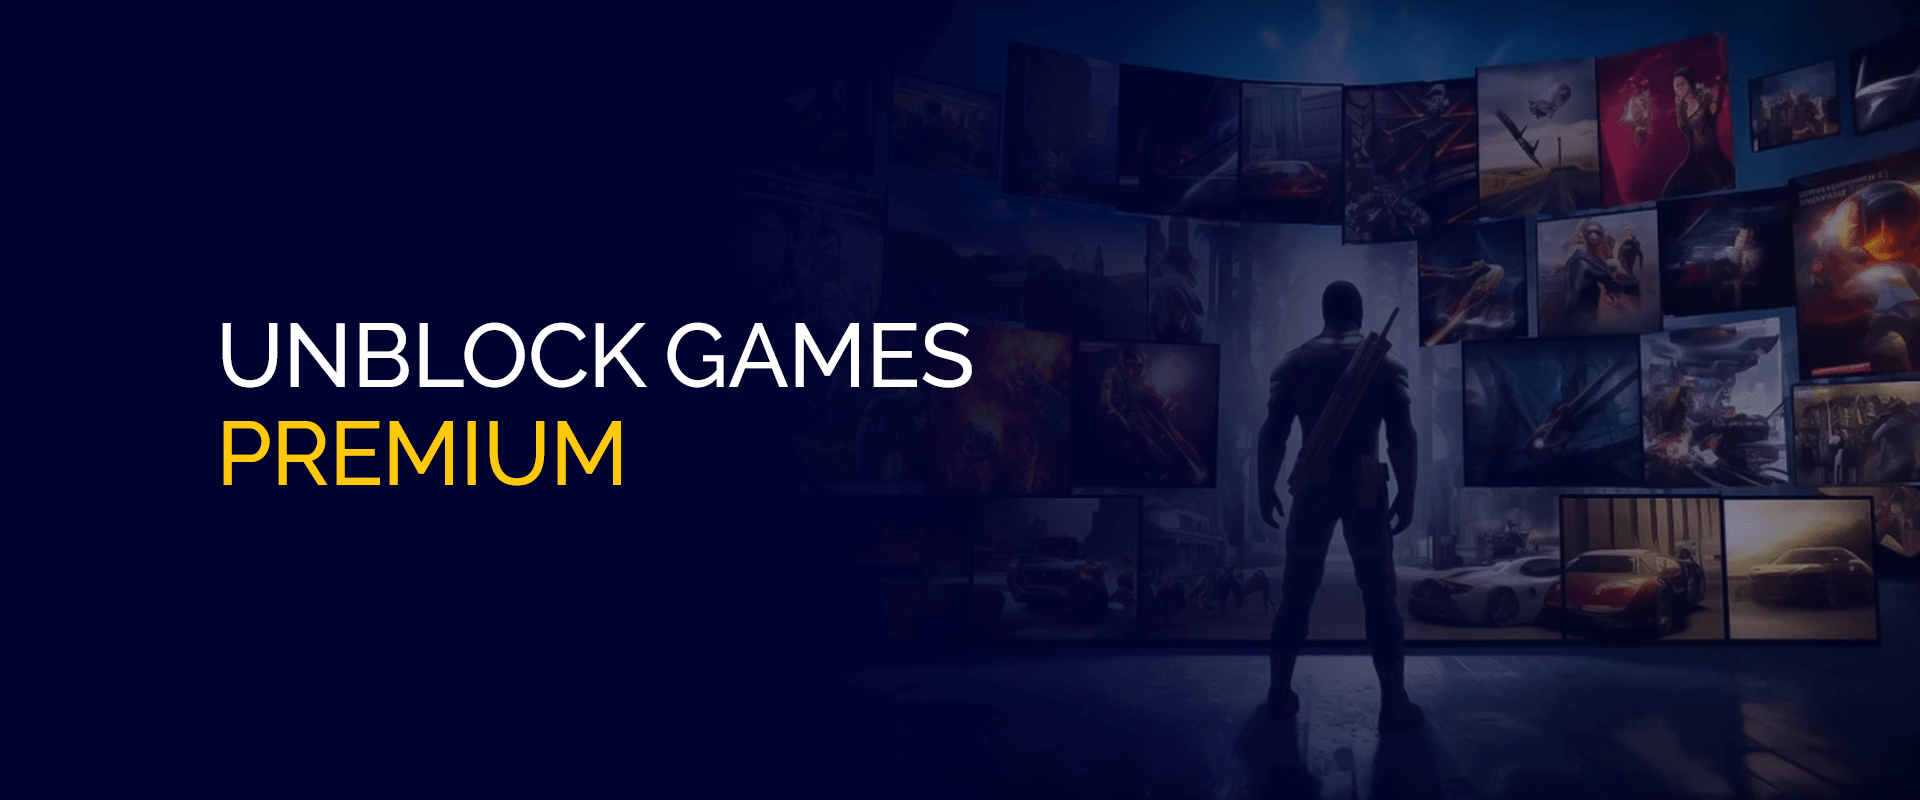 Unblock Games Premium